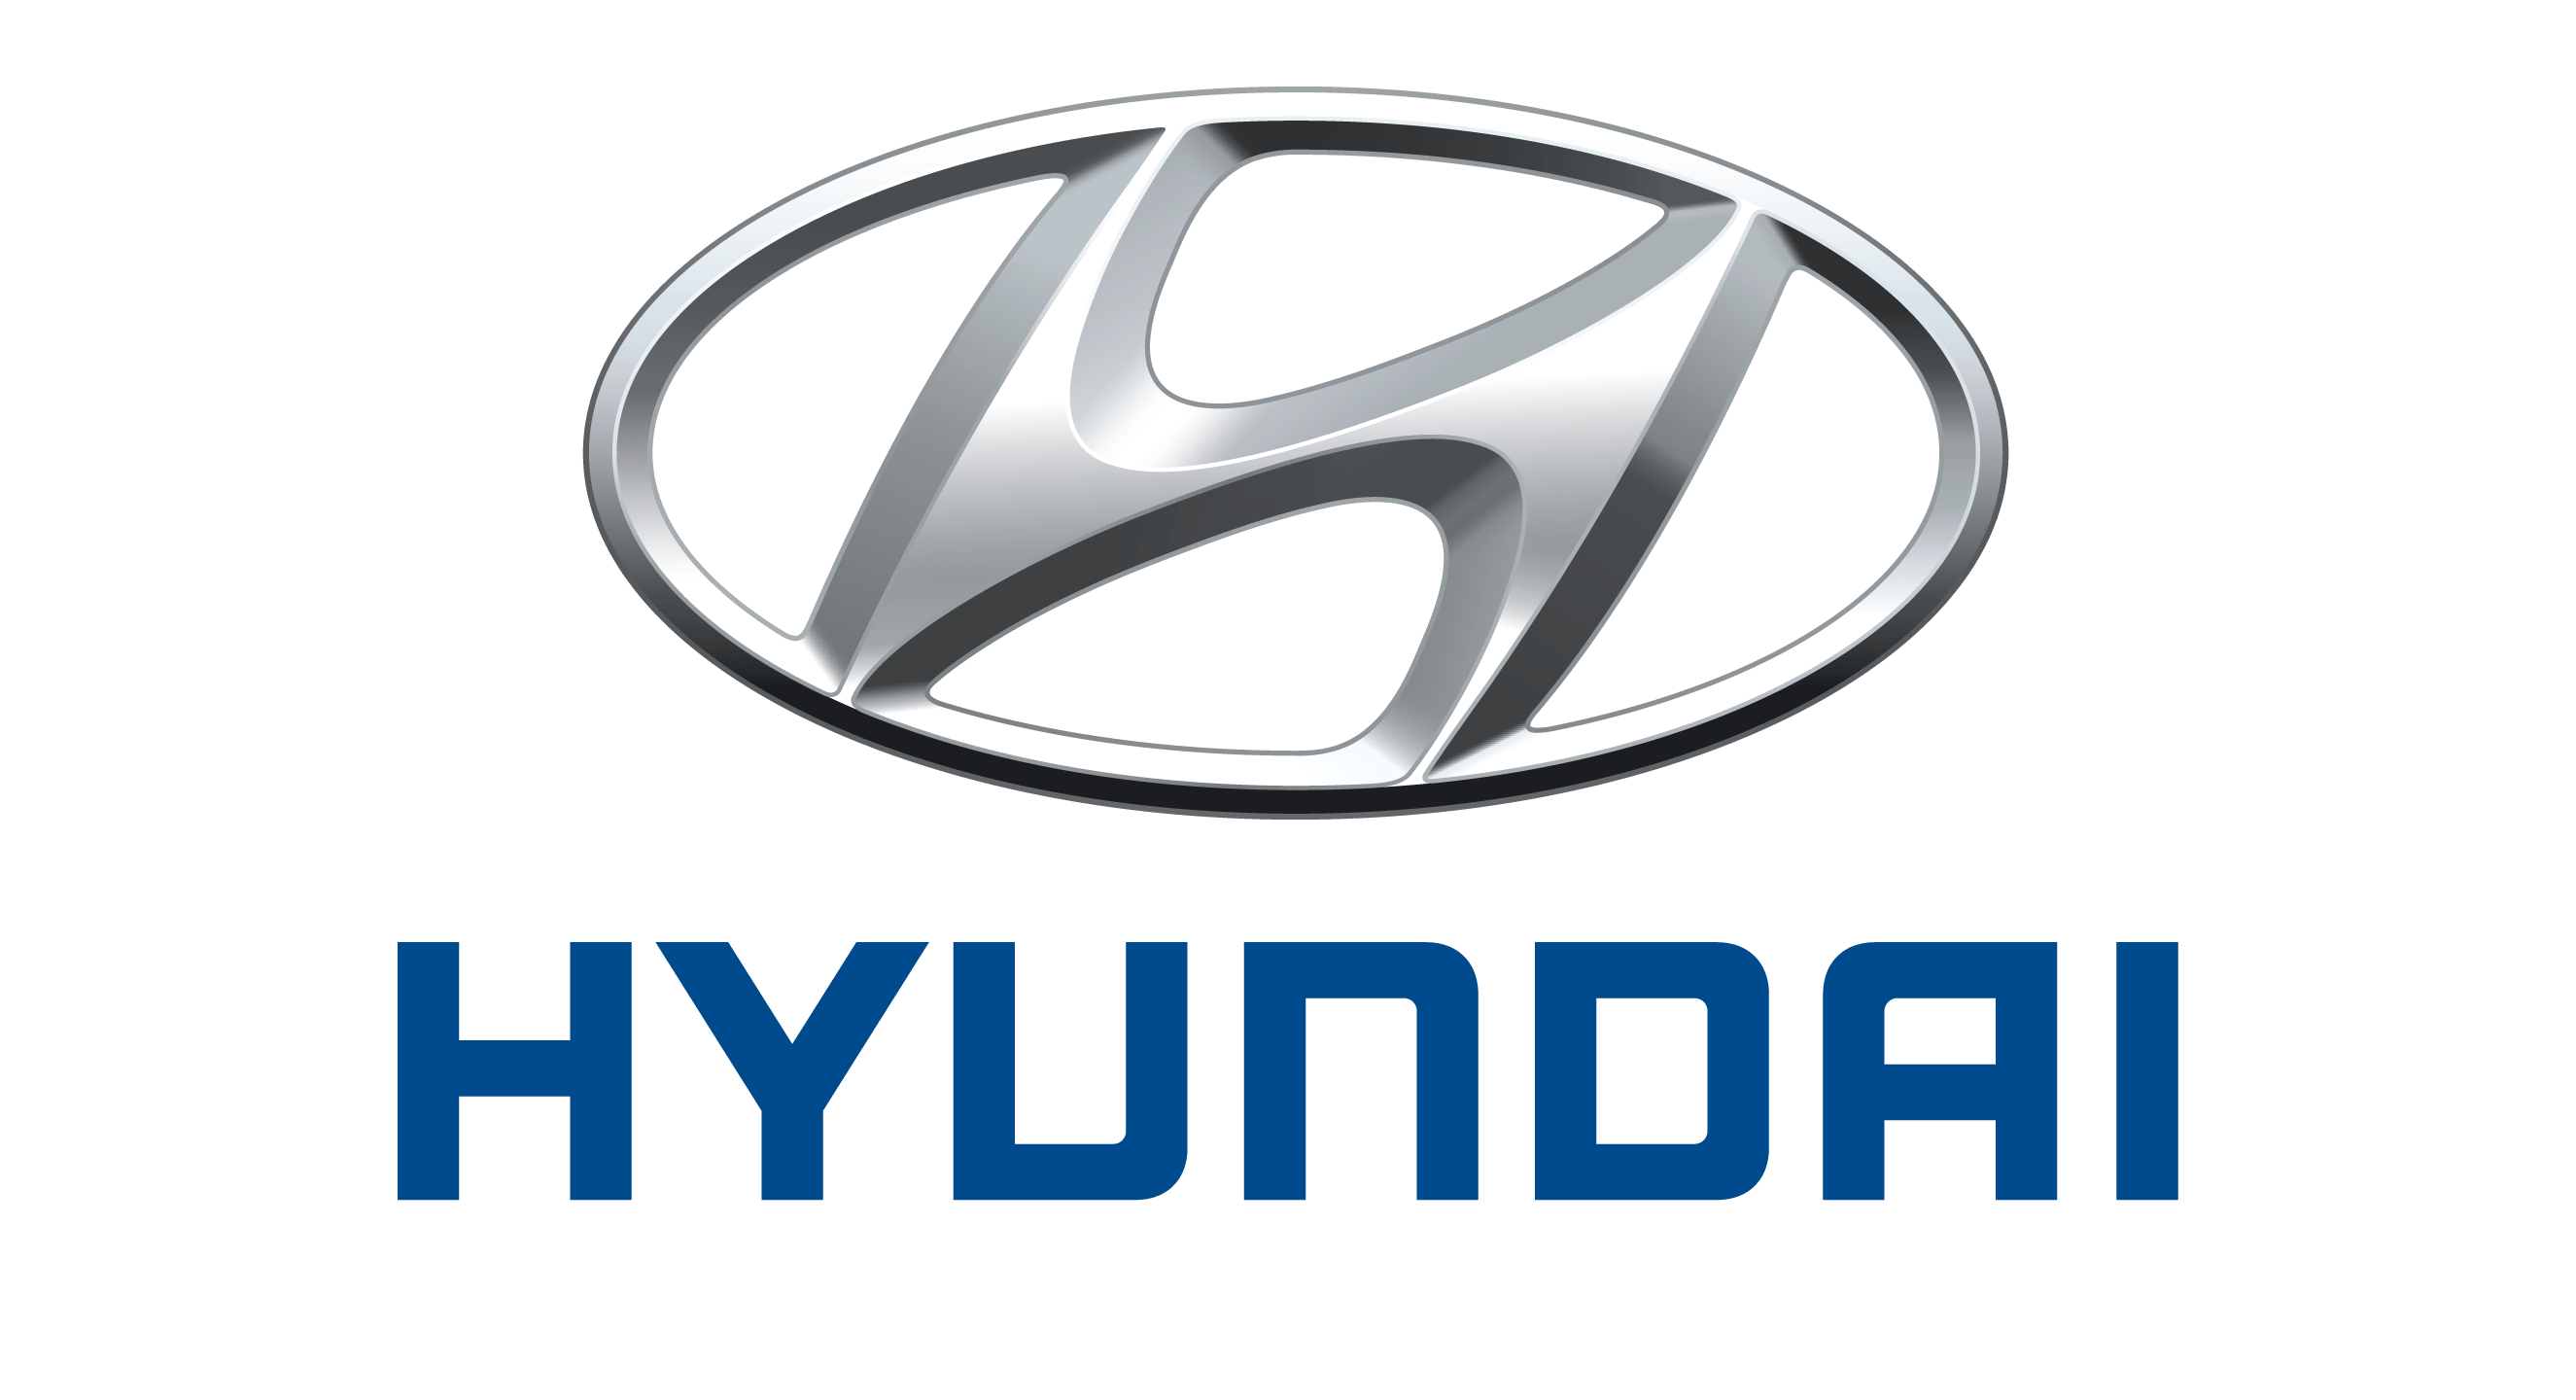 logo xe hyundai moi nhat - Hyundai Miền Nam: Giới thiệu đại lý và tin tuyển dụng mới nhất